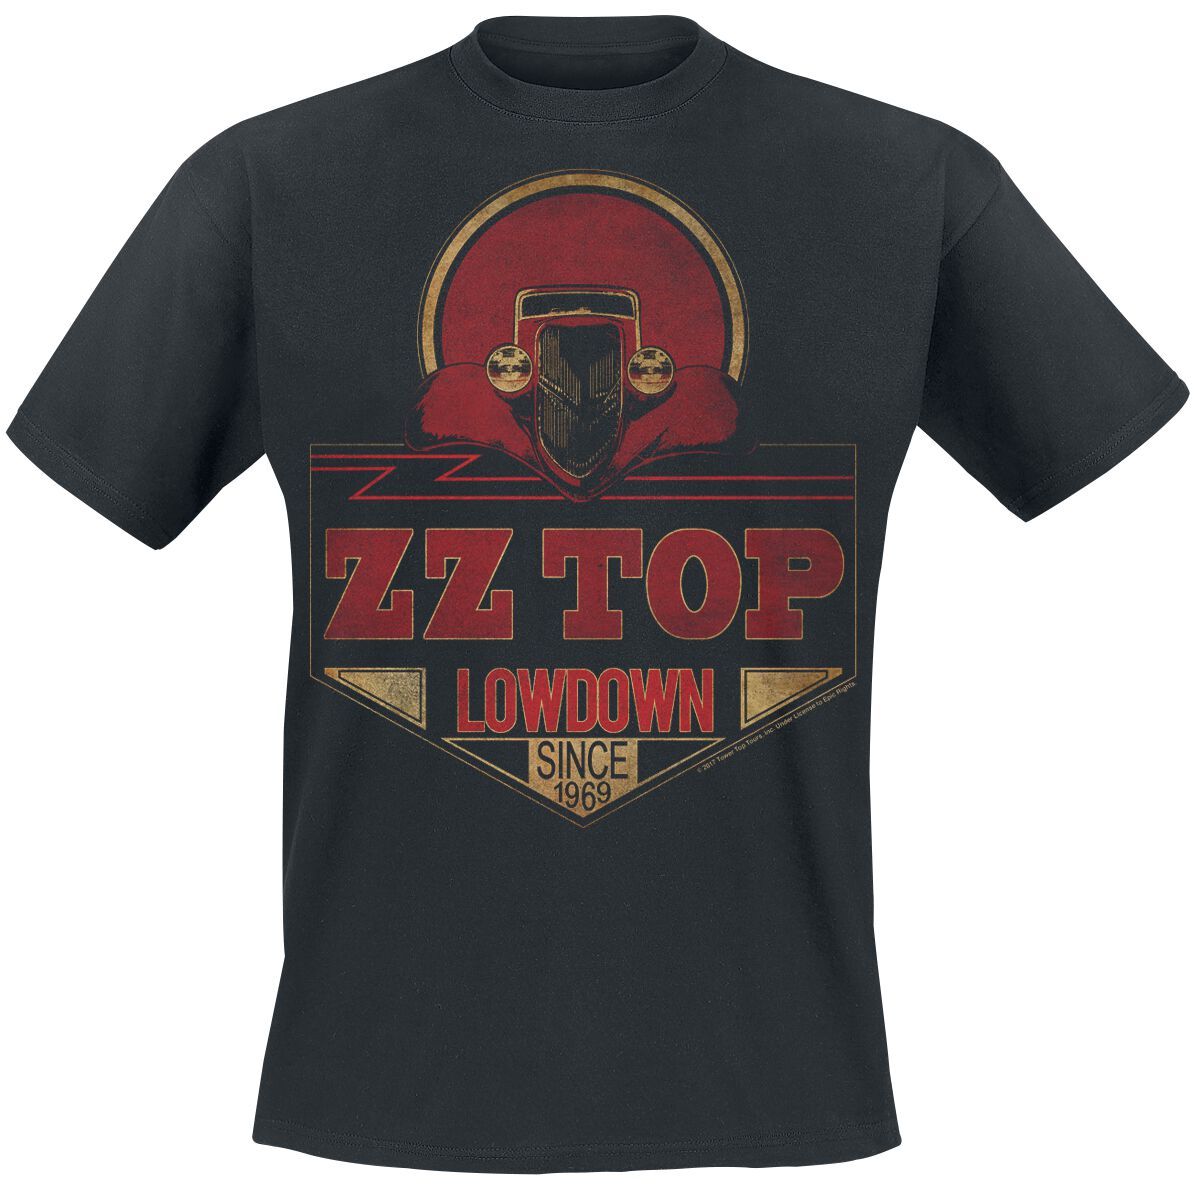 ZZ Top T-Shirt - Lowdown Since 1969 - S bis XXL - für Männer - Größe S - schwarz  - Lizenziertes Merchandise!